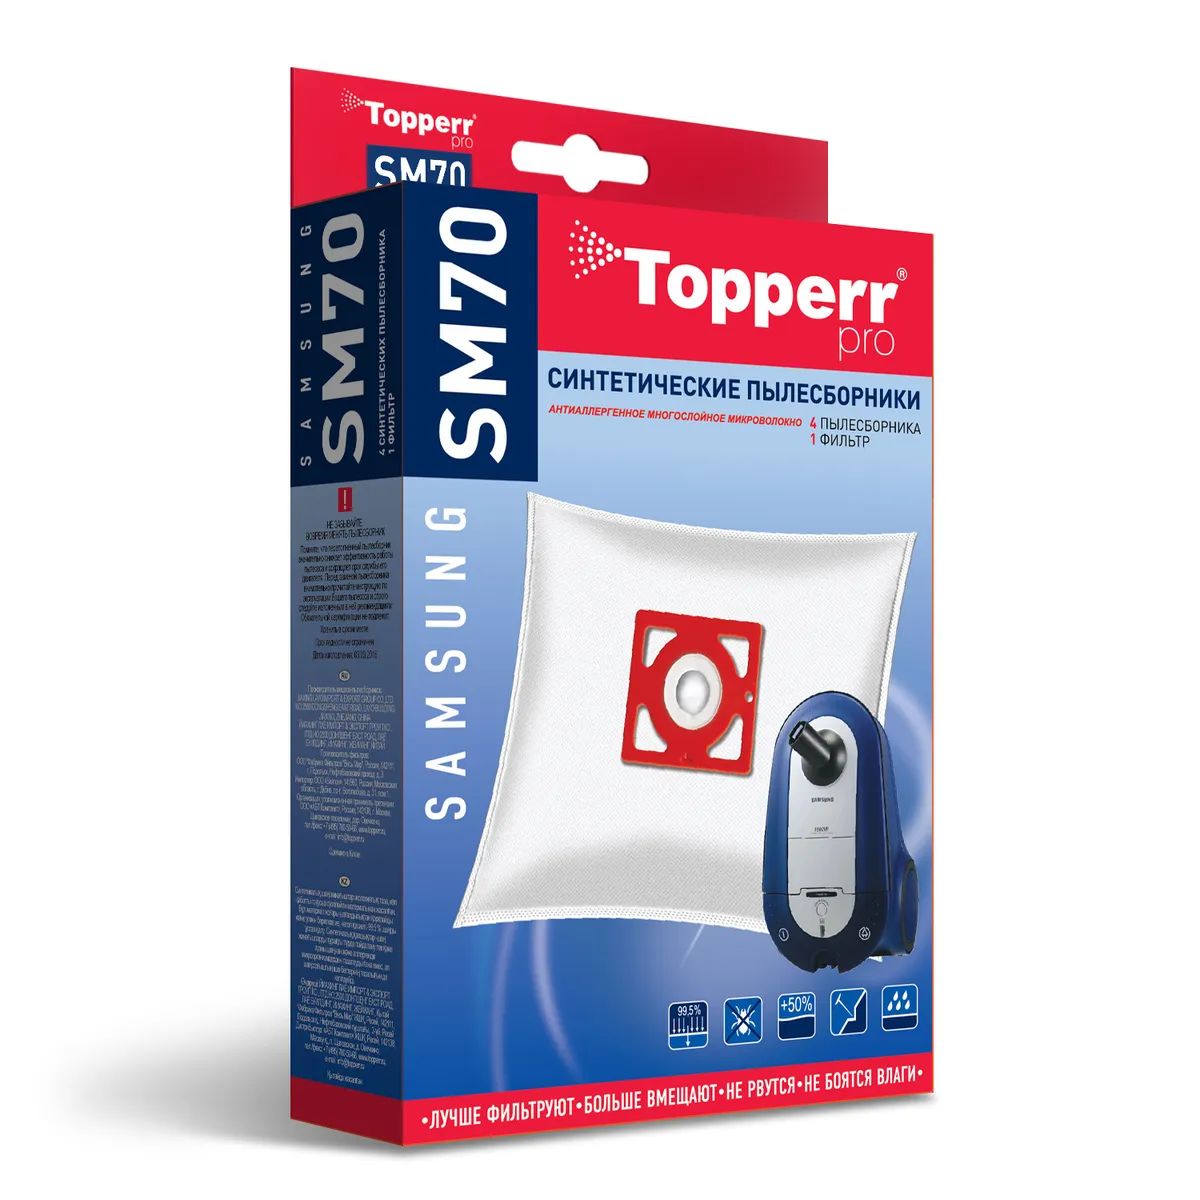 Пылесборник Topperr SM70 пылесборник синтетический topperr ml40 для miele fjm 3d 4шт 2 фильтра 1438